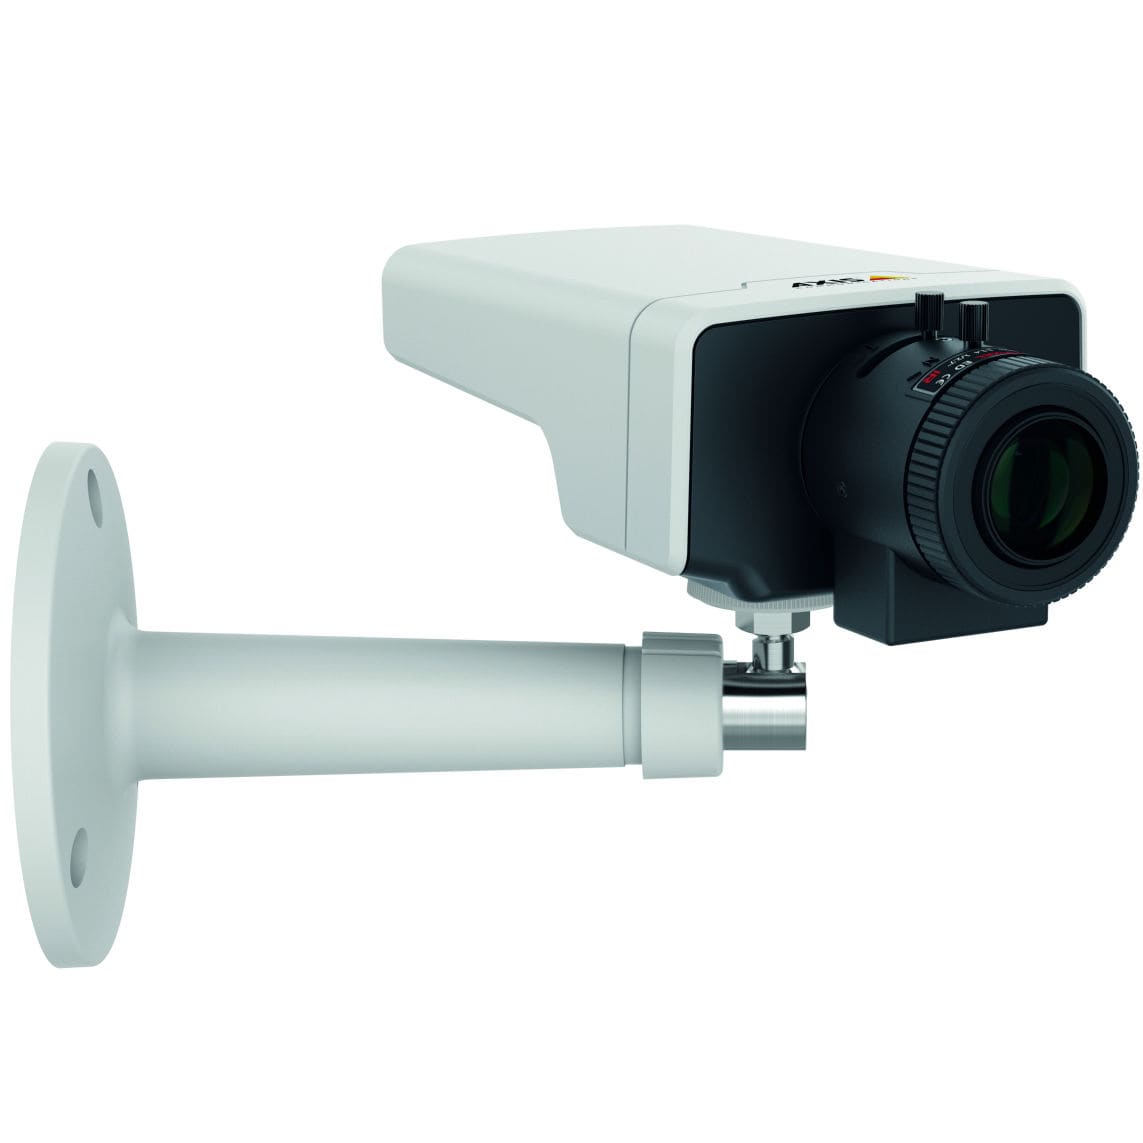 Axis نسل جدید سری دوربین های شبکه AXIS M11 را راه اندازی کرد